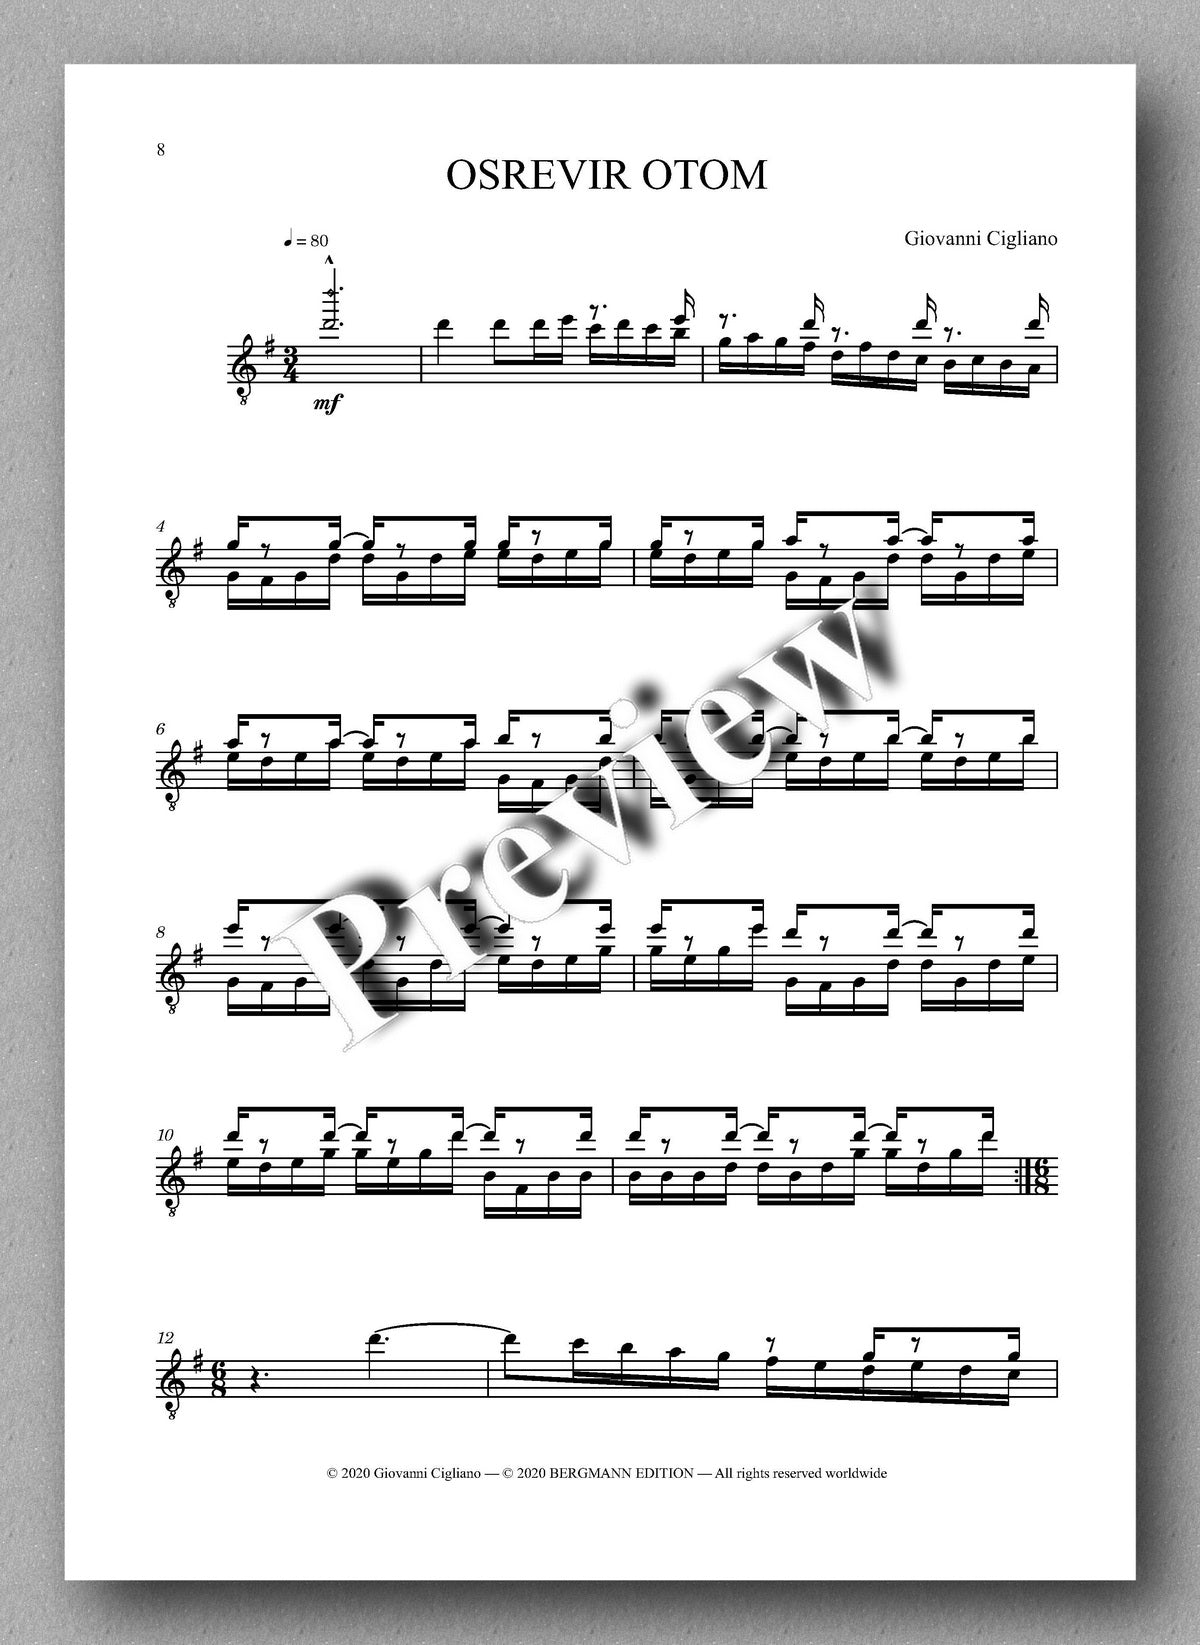 Giovanni Cigliano, Moto Riverso - preview of the music  score 1